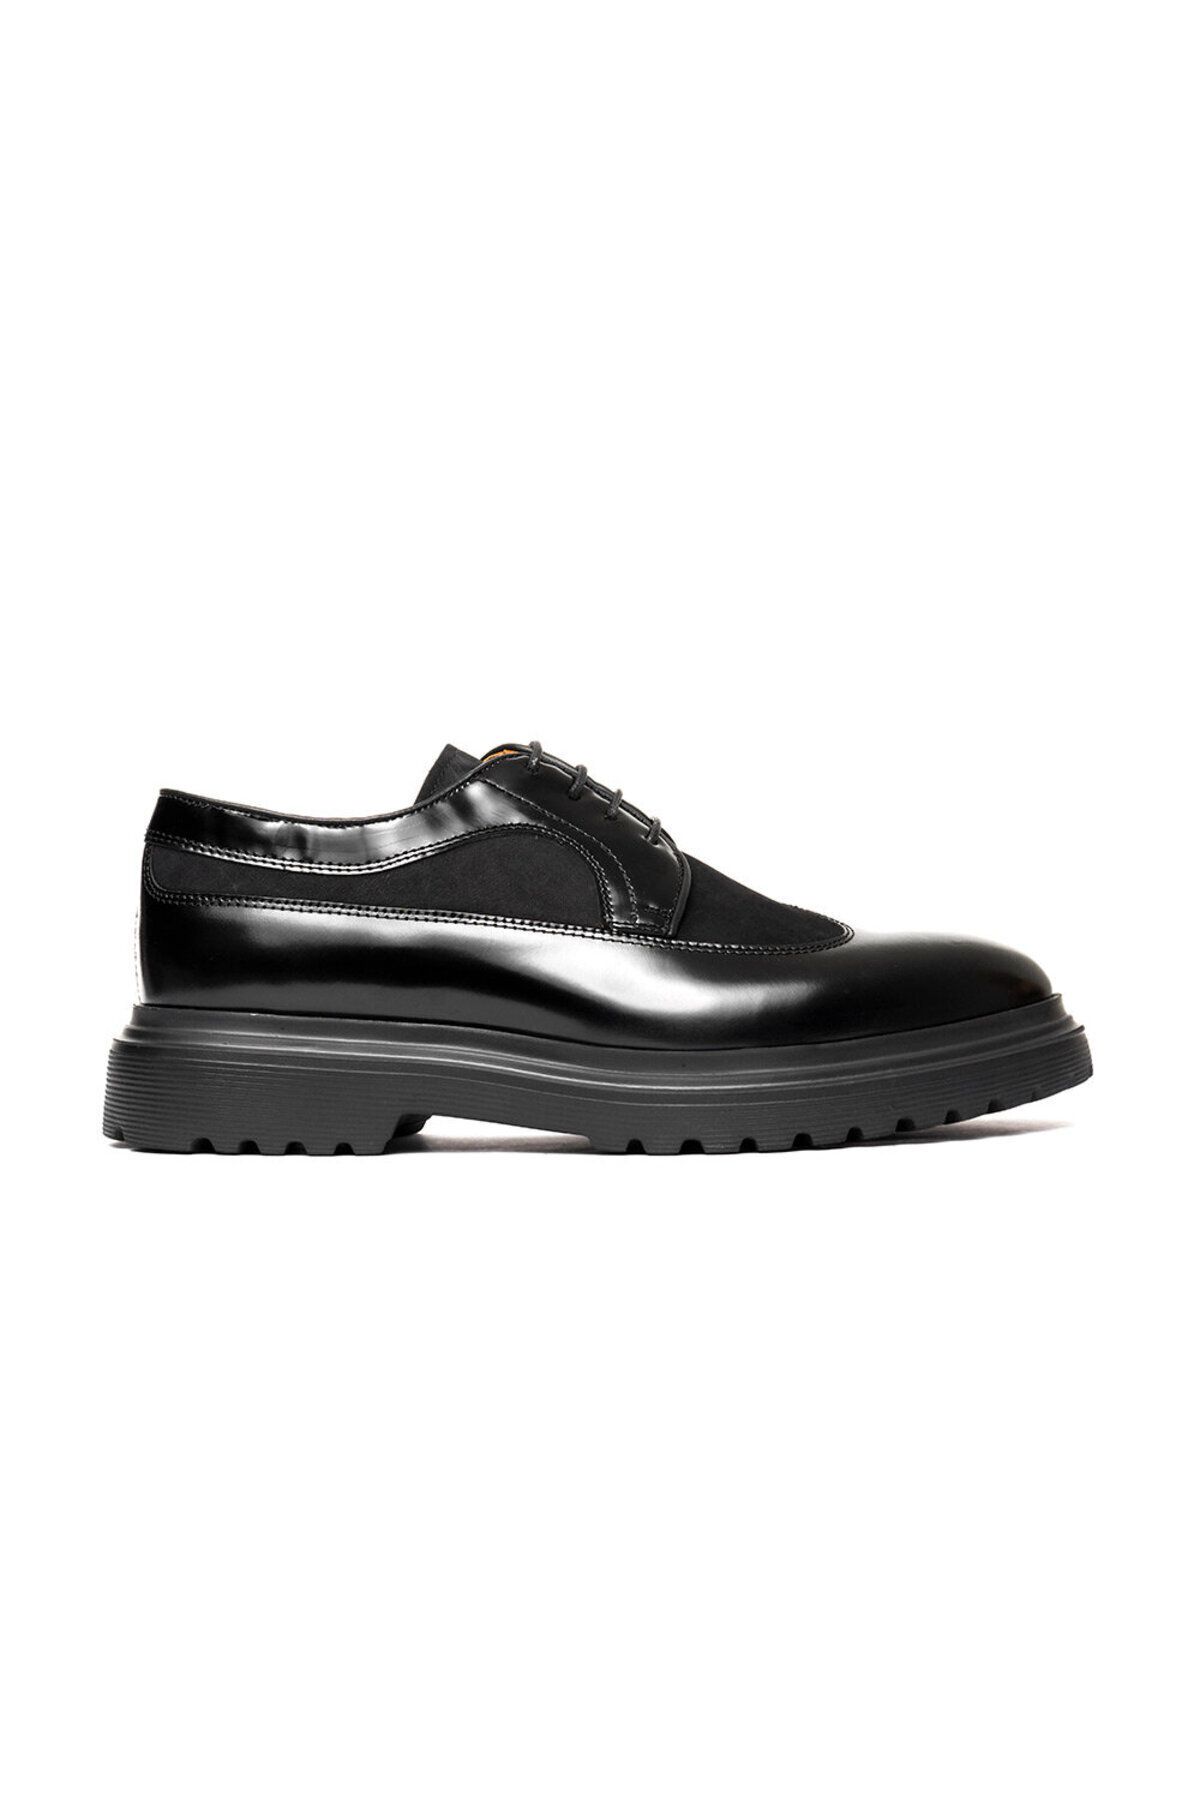 Greyder Erkek Siyah Hakiki Deri Klasik Ayakkabı 3k1ka16320